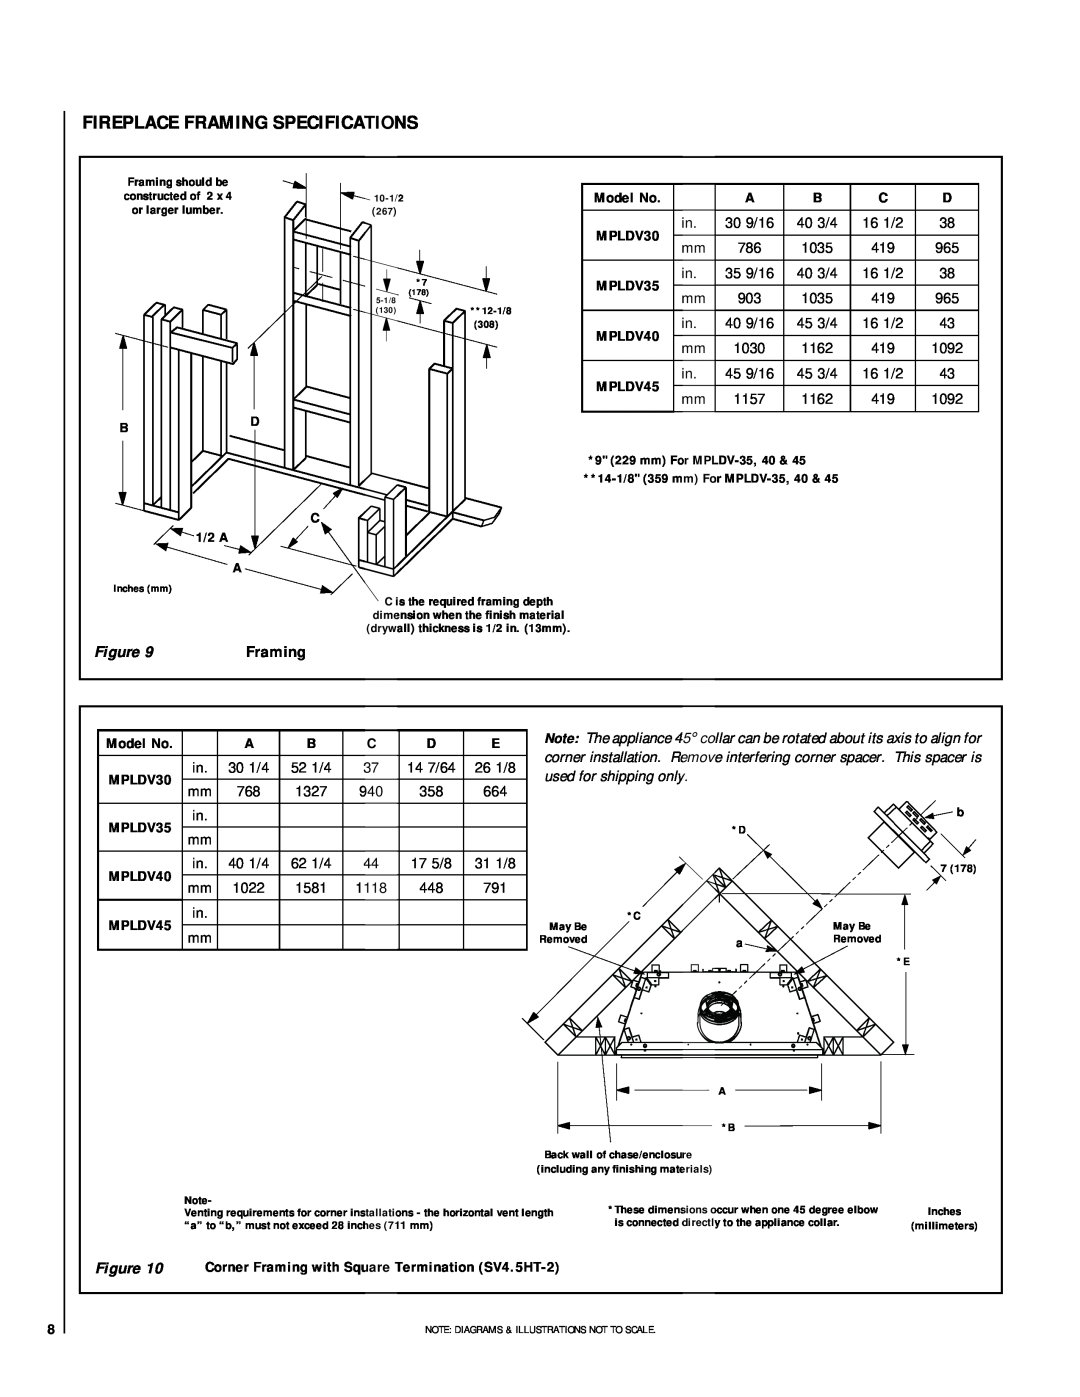 Lennox Hearth EN54-VDLPM, MN04-VDLPM, MN03-VDLPM, MP54-VDLPM Fireplace Framing Specifications, BD C 1/2 A A, Model No 